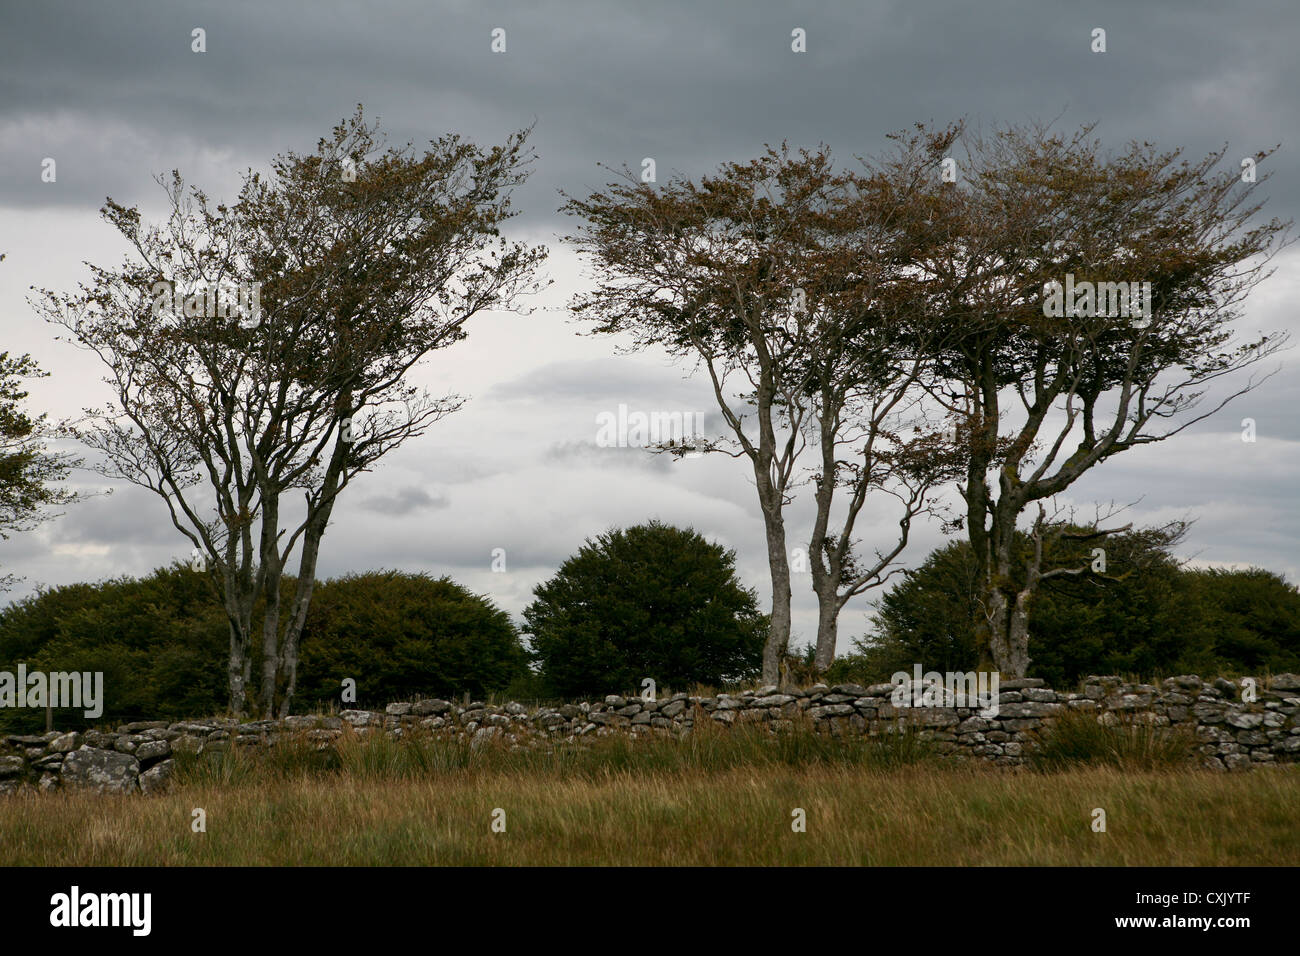 Cielo grigio dietro alberi autunnali, spazzati dal vento, con un vecchio muro di granito secco pietra, giorno tempestoso, Dartmoor, Regno Unito Foto Stock